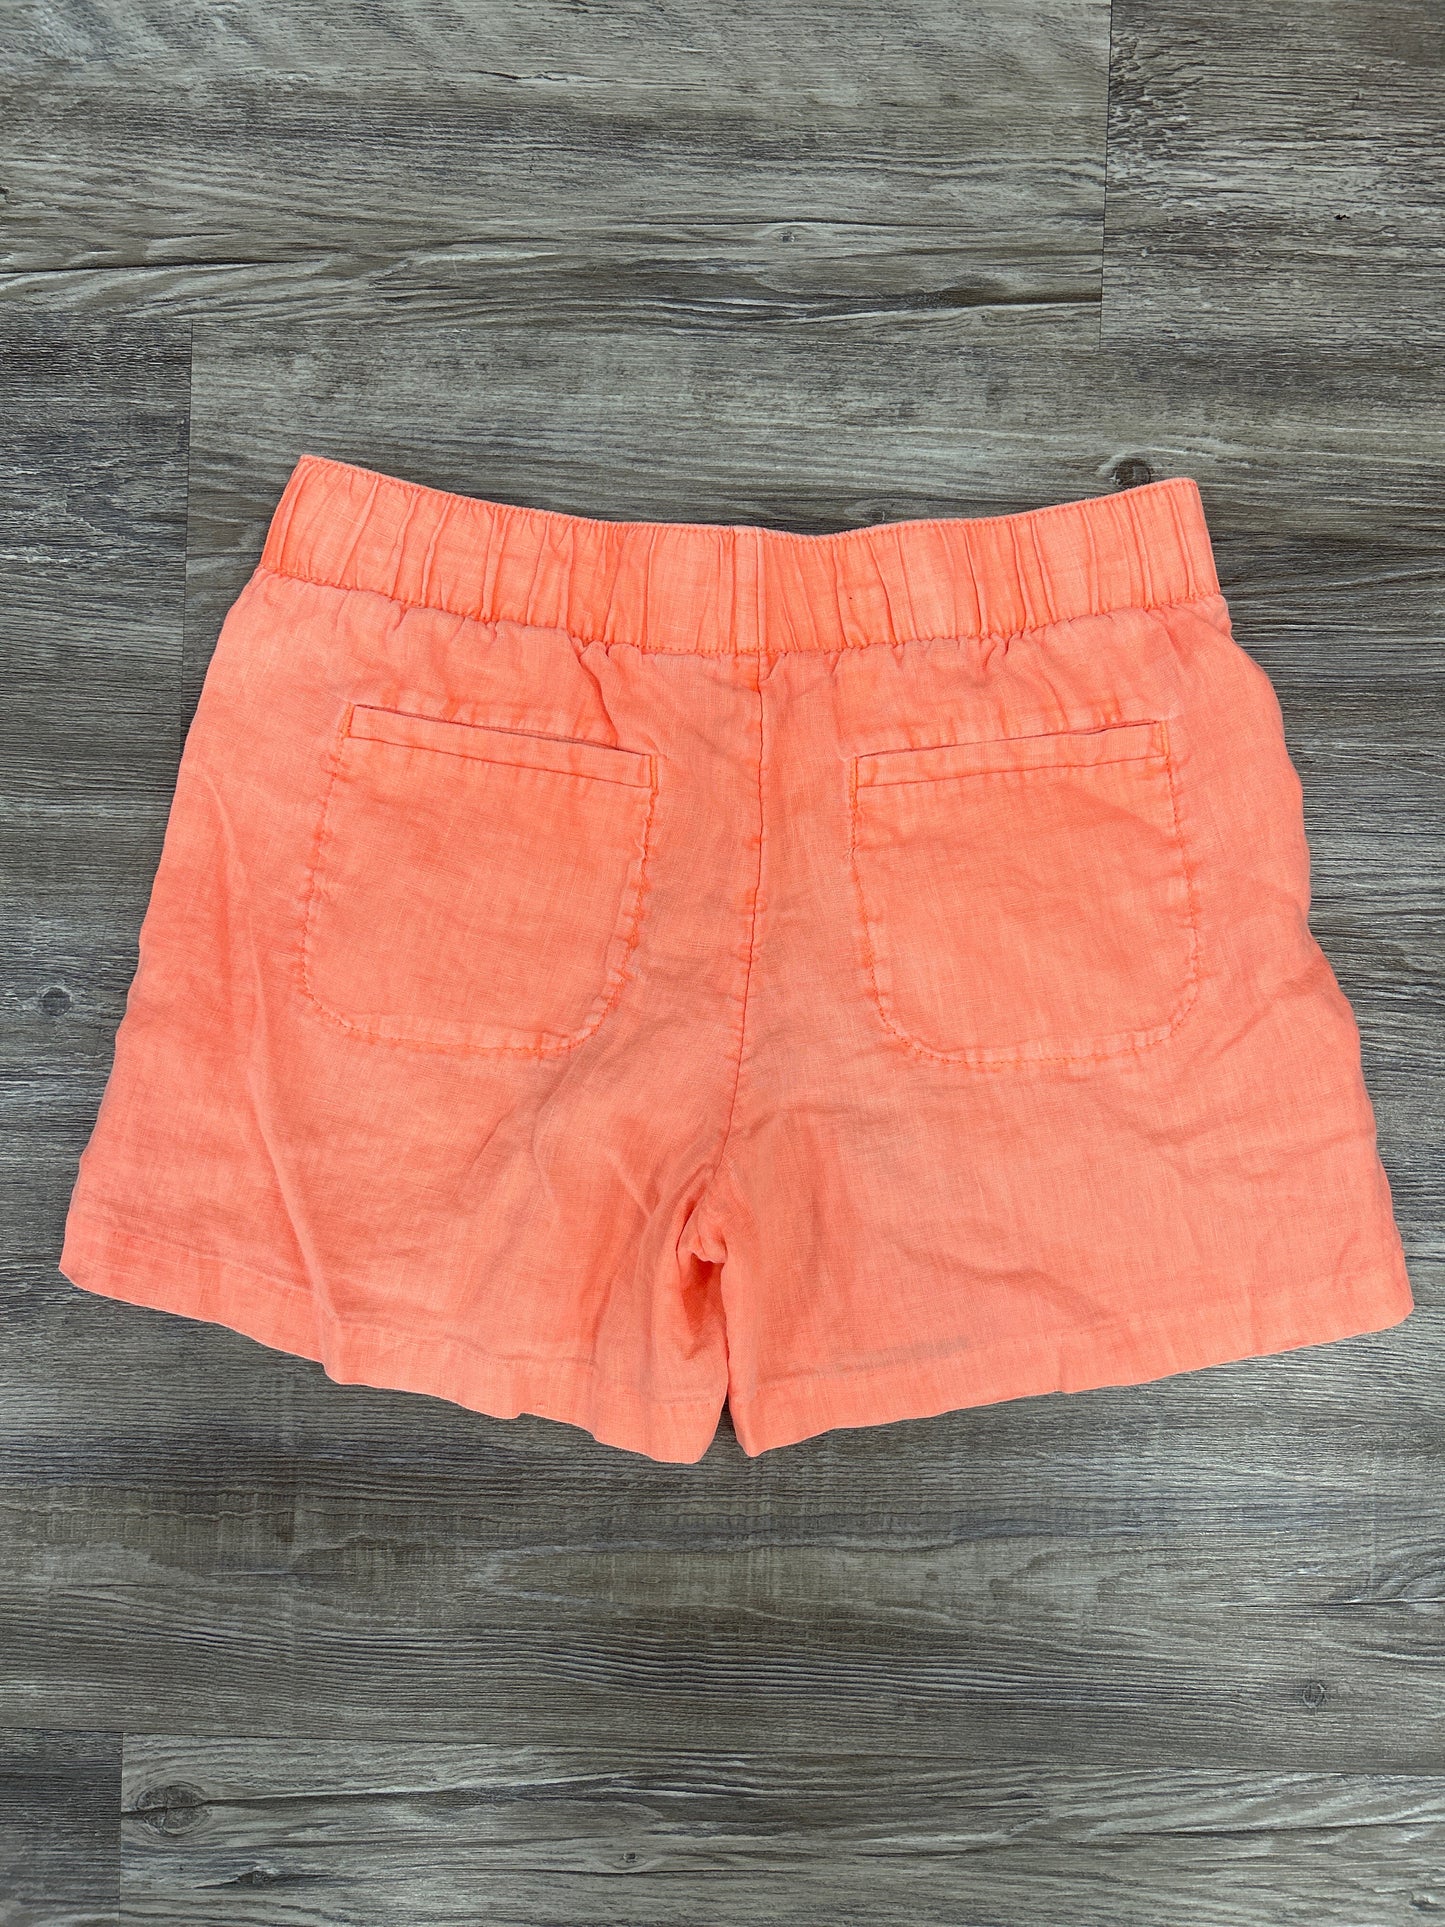 Orange Shorts Lilly Pulitzer, Size Xs